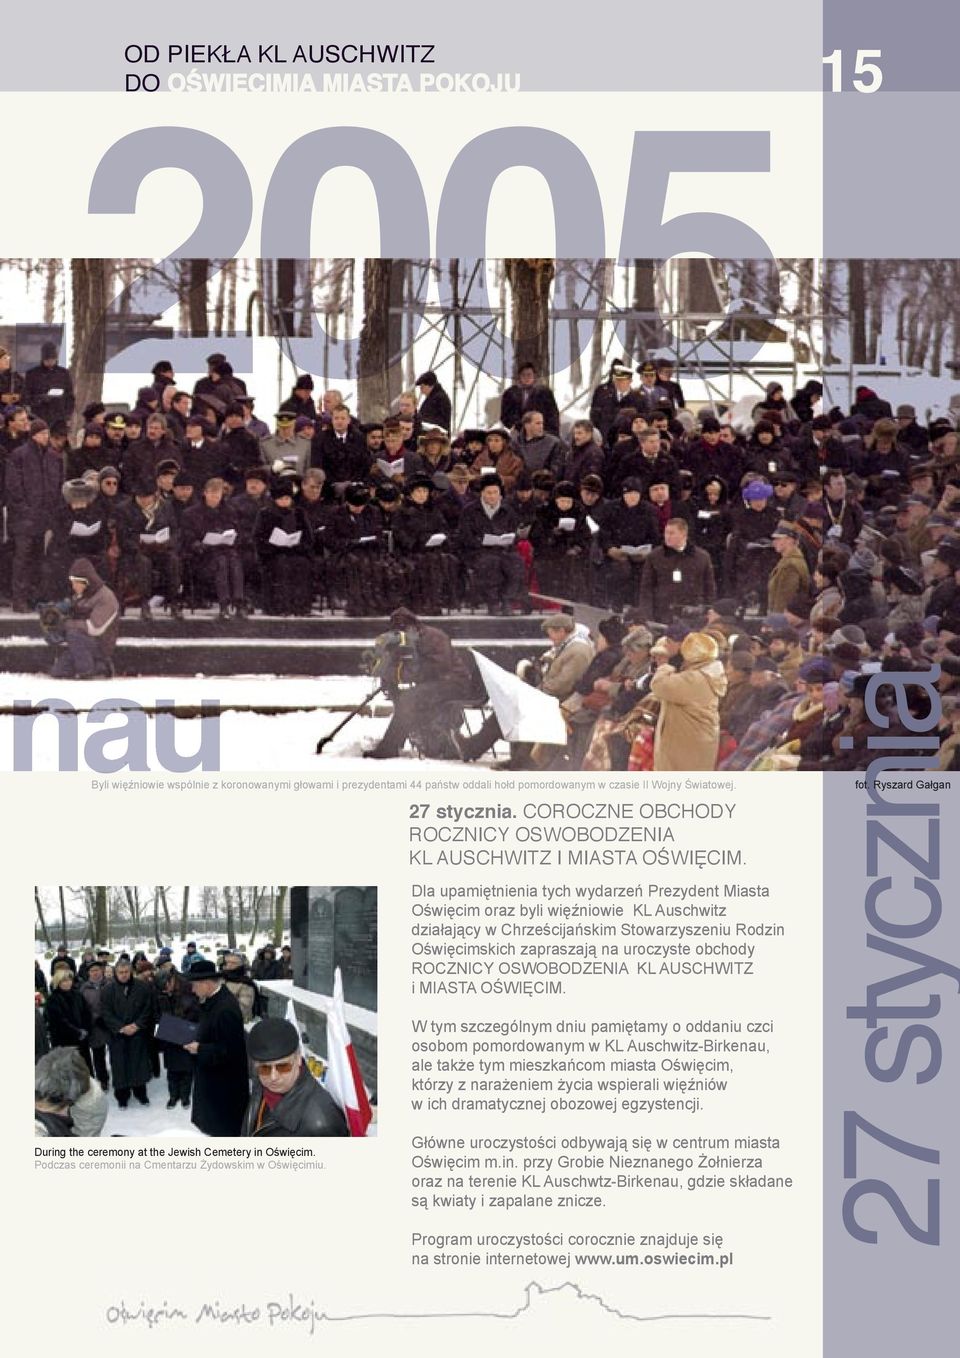 Dla upamiętnienia tych wydarzeń Prezydent Miasta Oświęcim oraz byli więźniowie KL Auschwitz działający w Chrześcijańskim Stowarzyszeniu Rodzin Oświęcimskich zapraszają na uroczyste obchody ROCZNICY